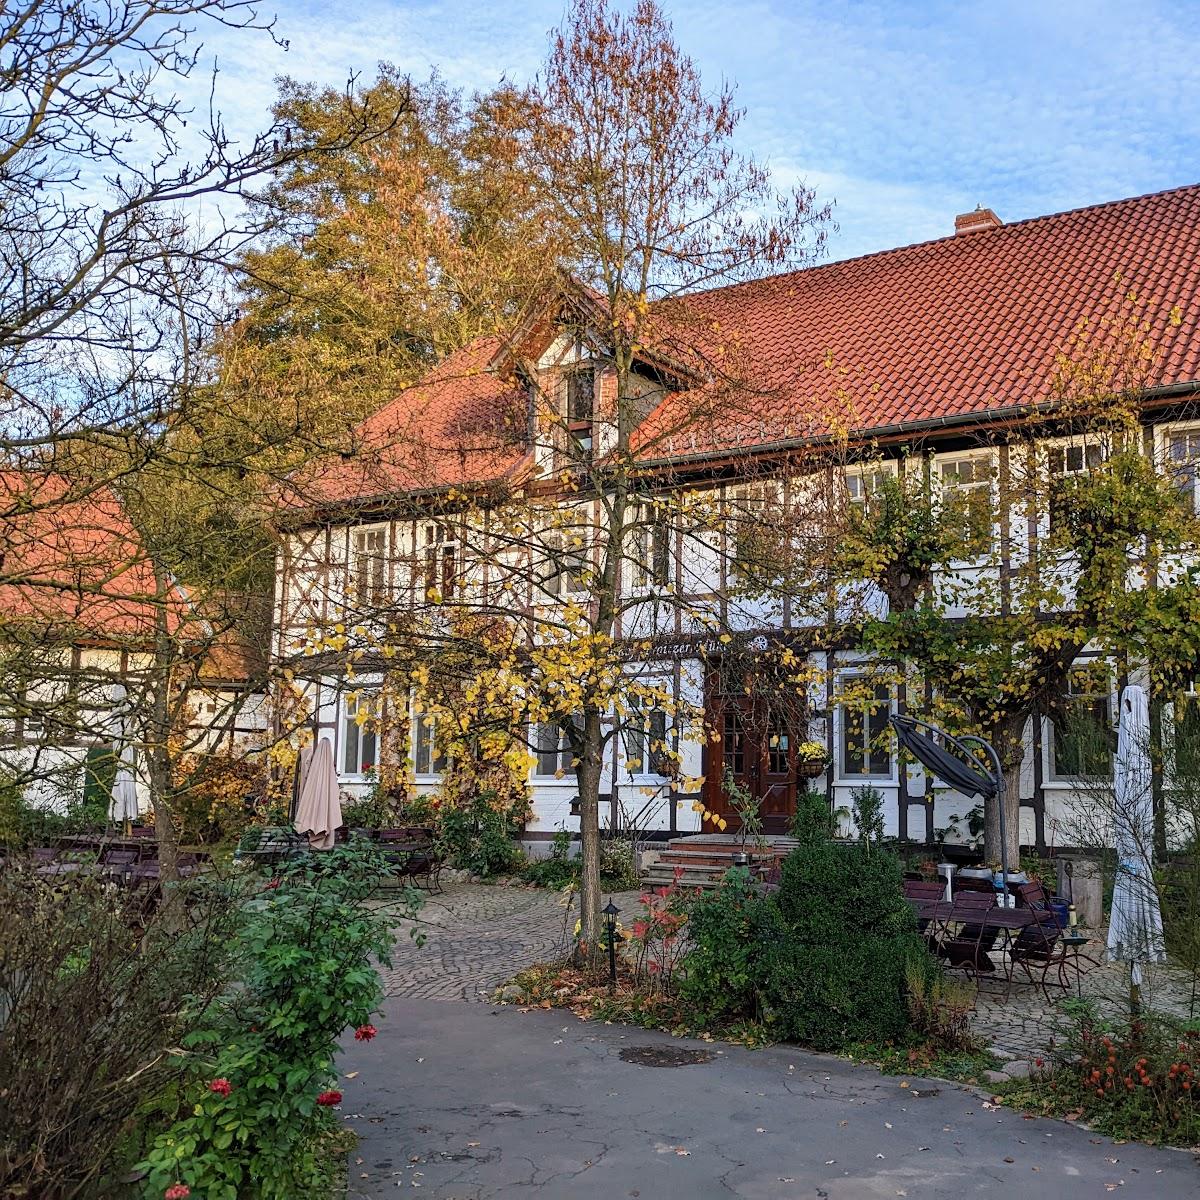 Restaurant "Proitzer Mühle" in Schnega